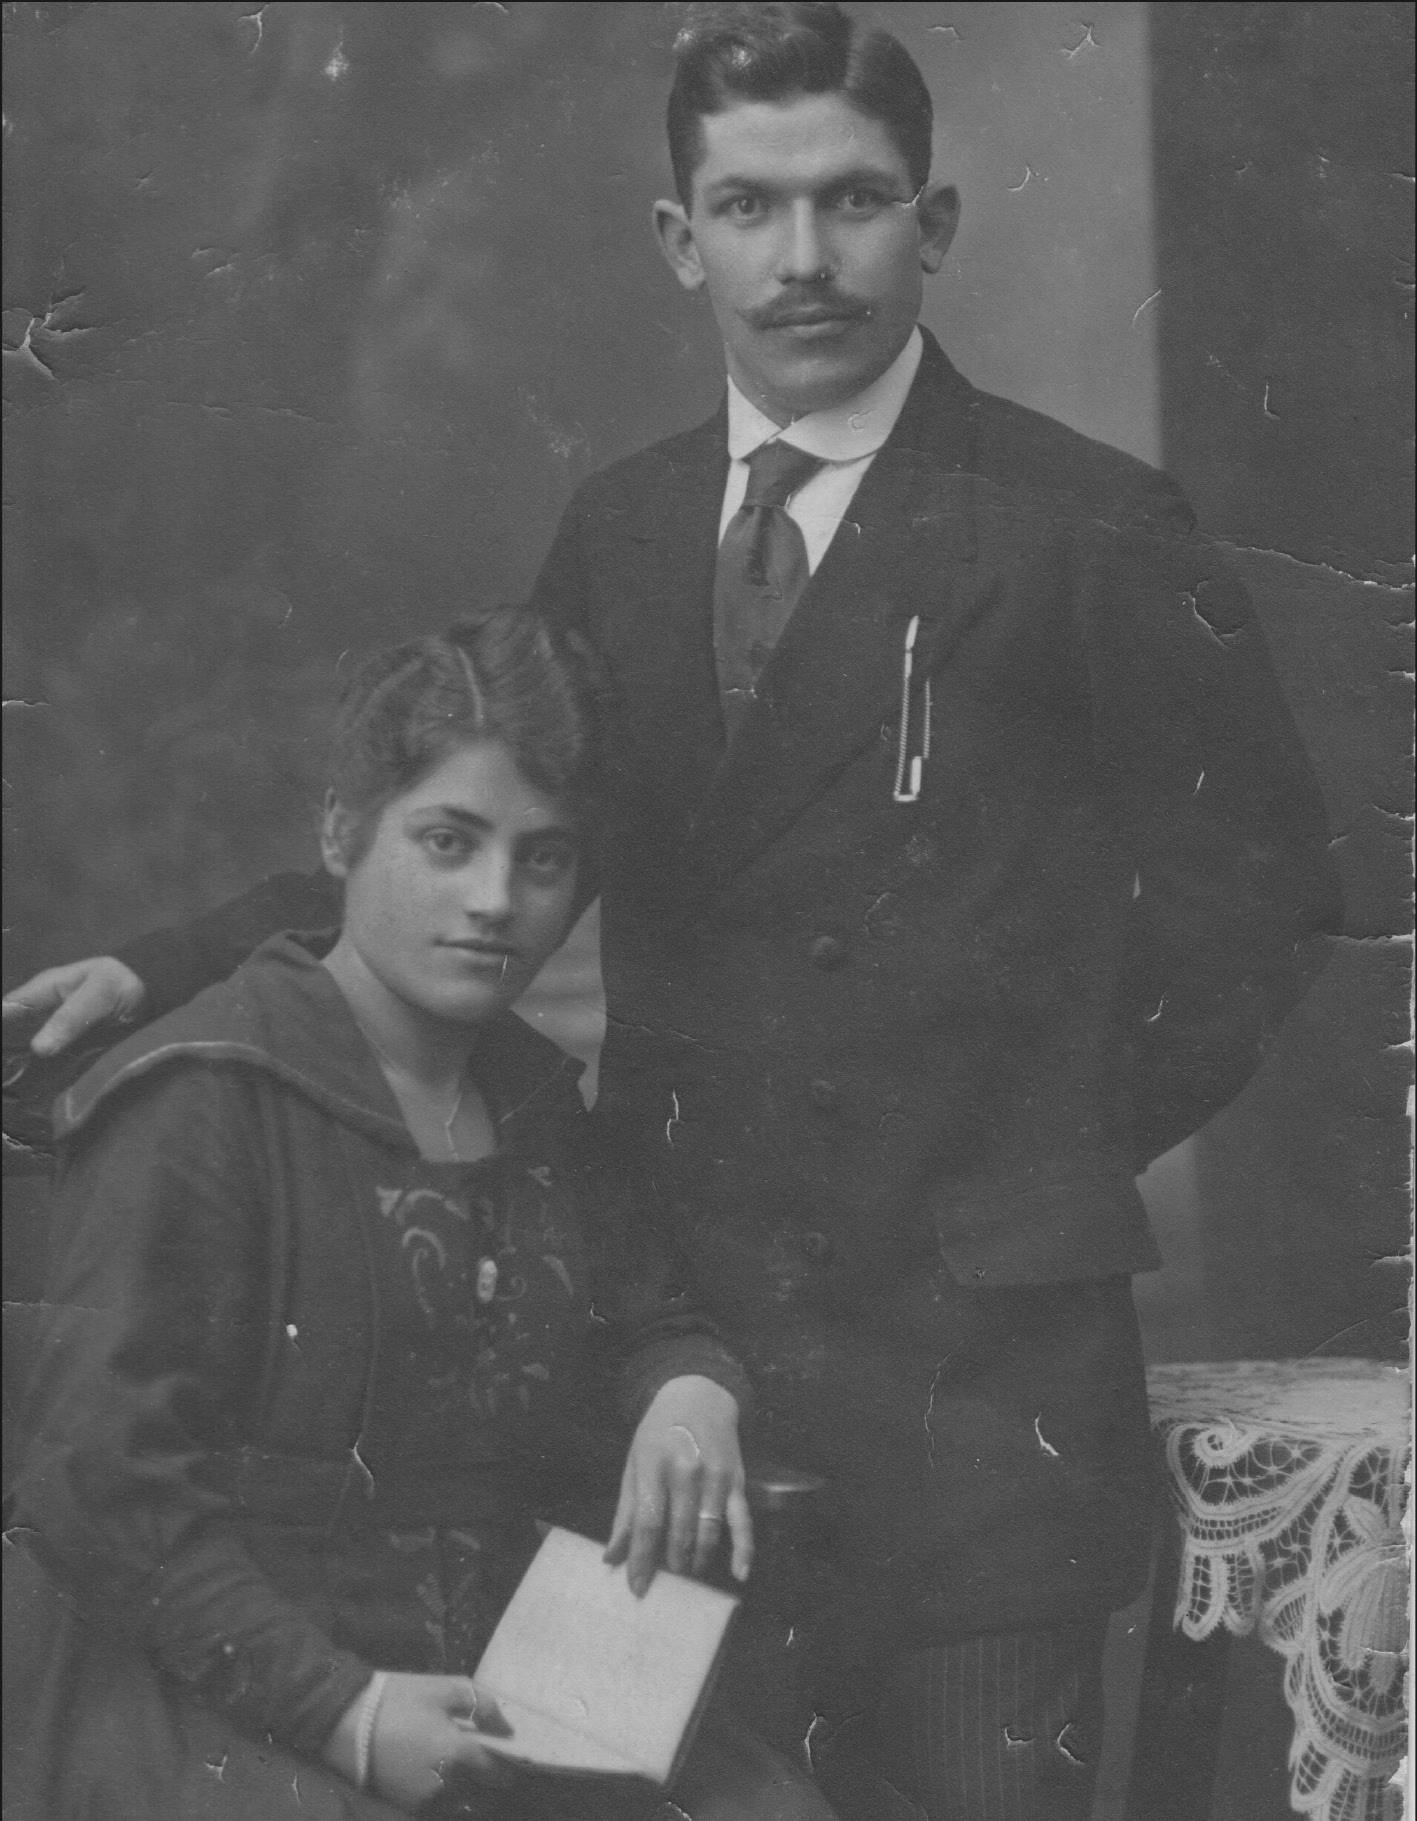 Oma und Opa, Hochzeitsfoto, 1920